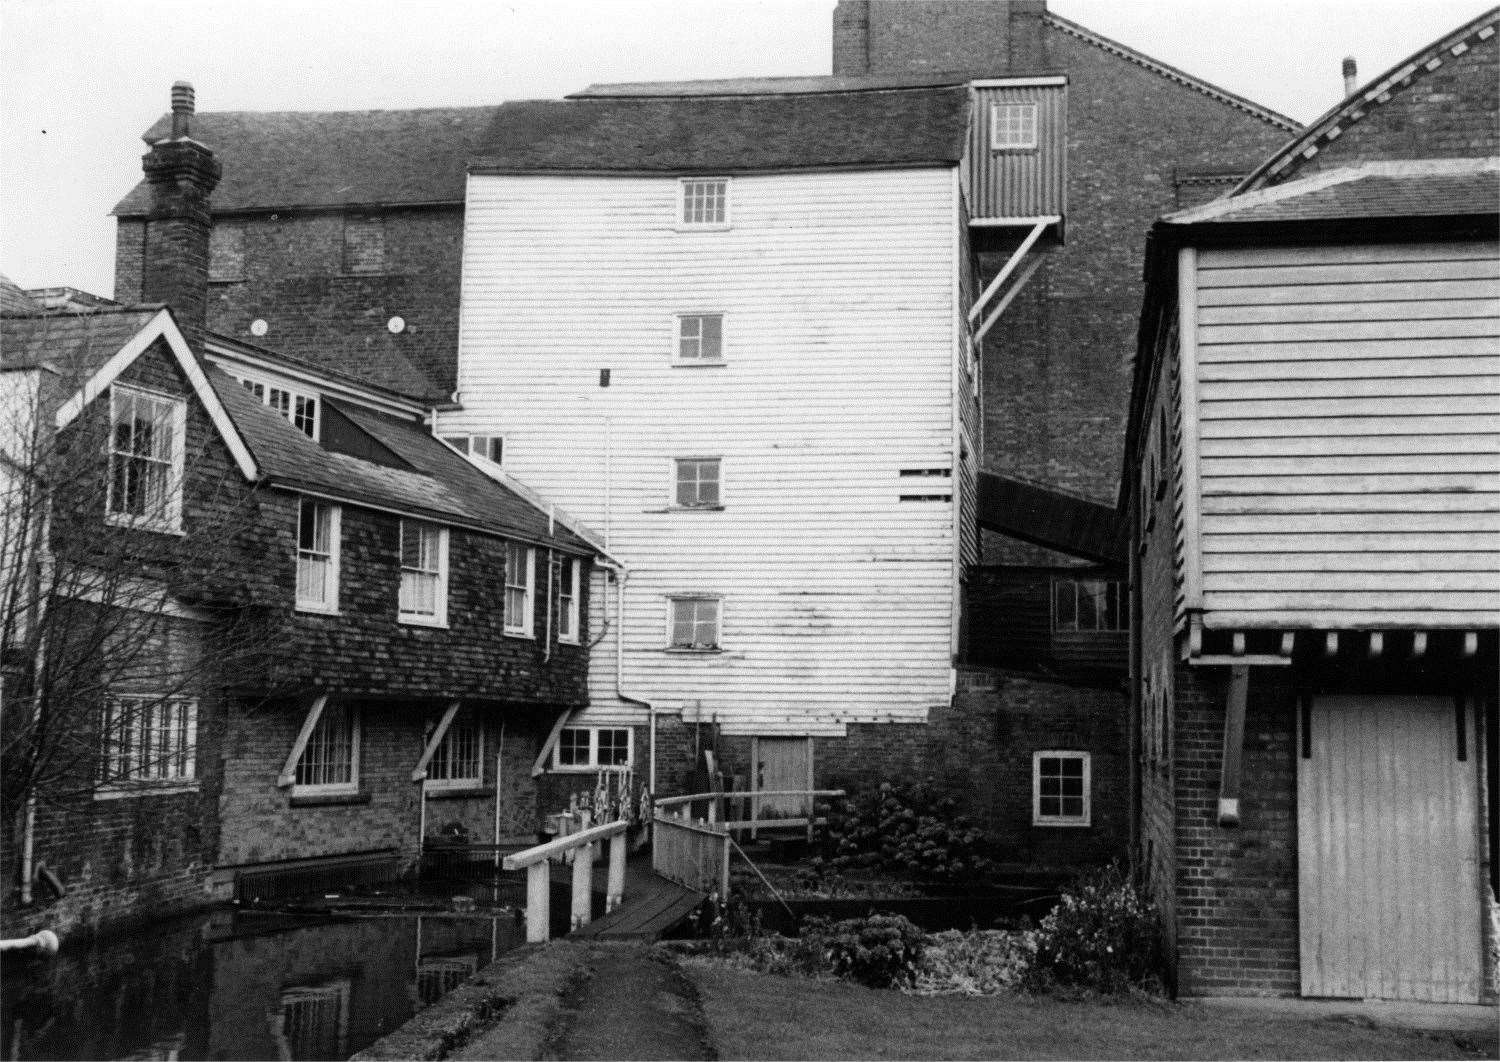 The mill in November 1965